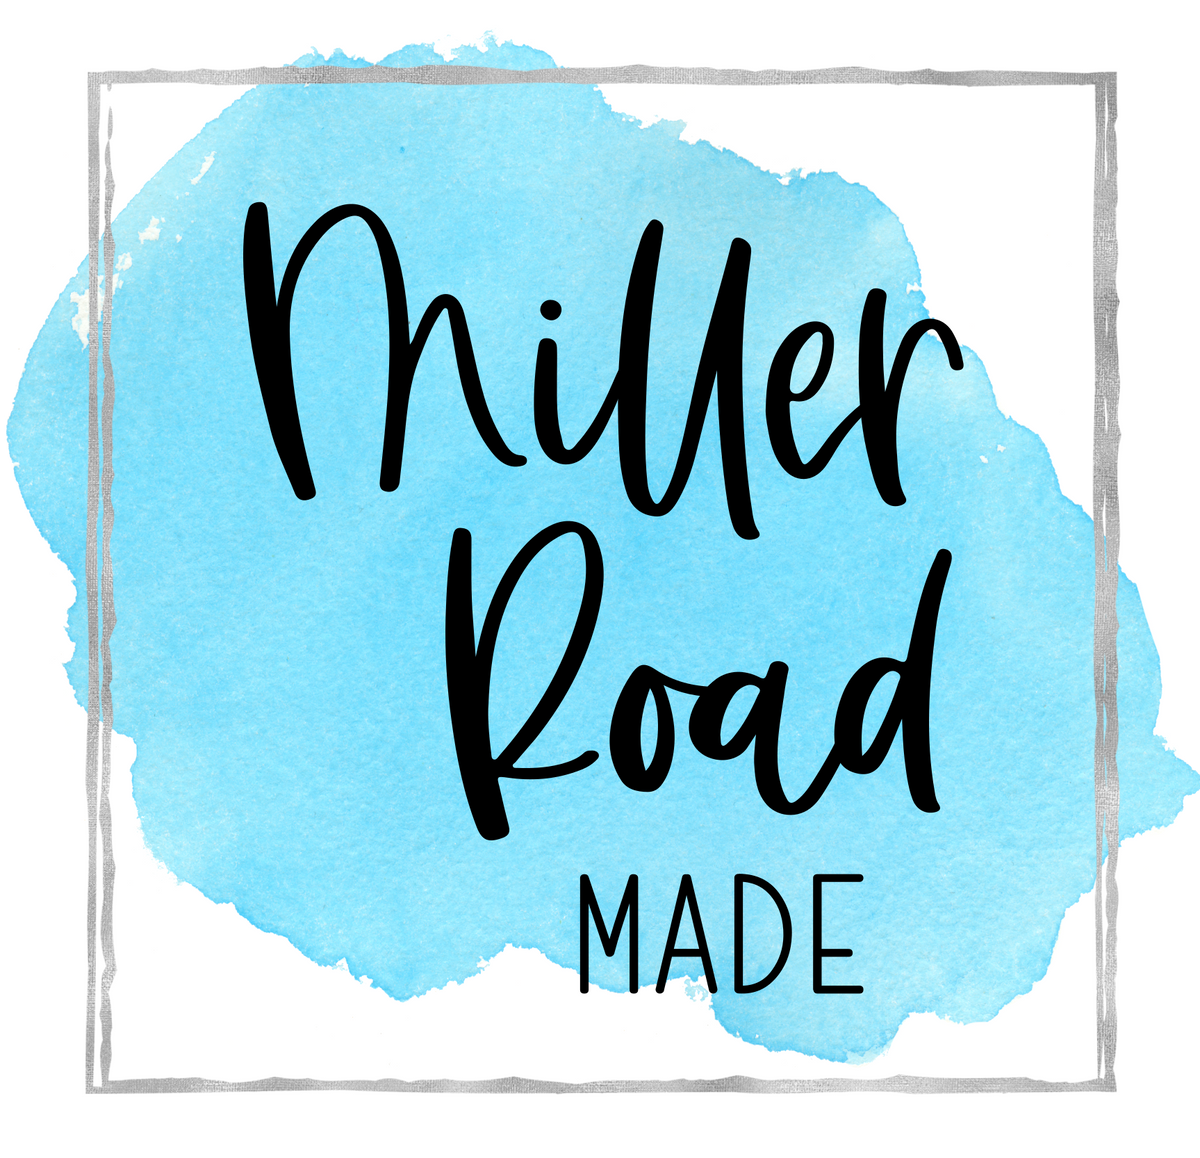 Miller Road Made